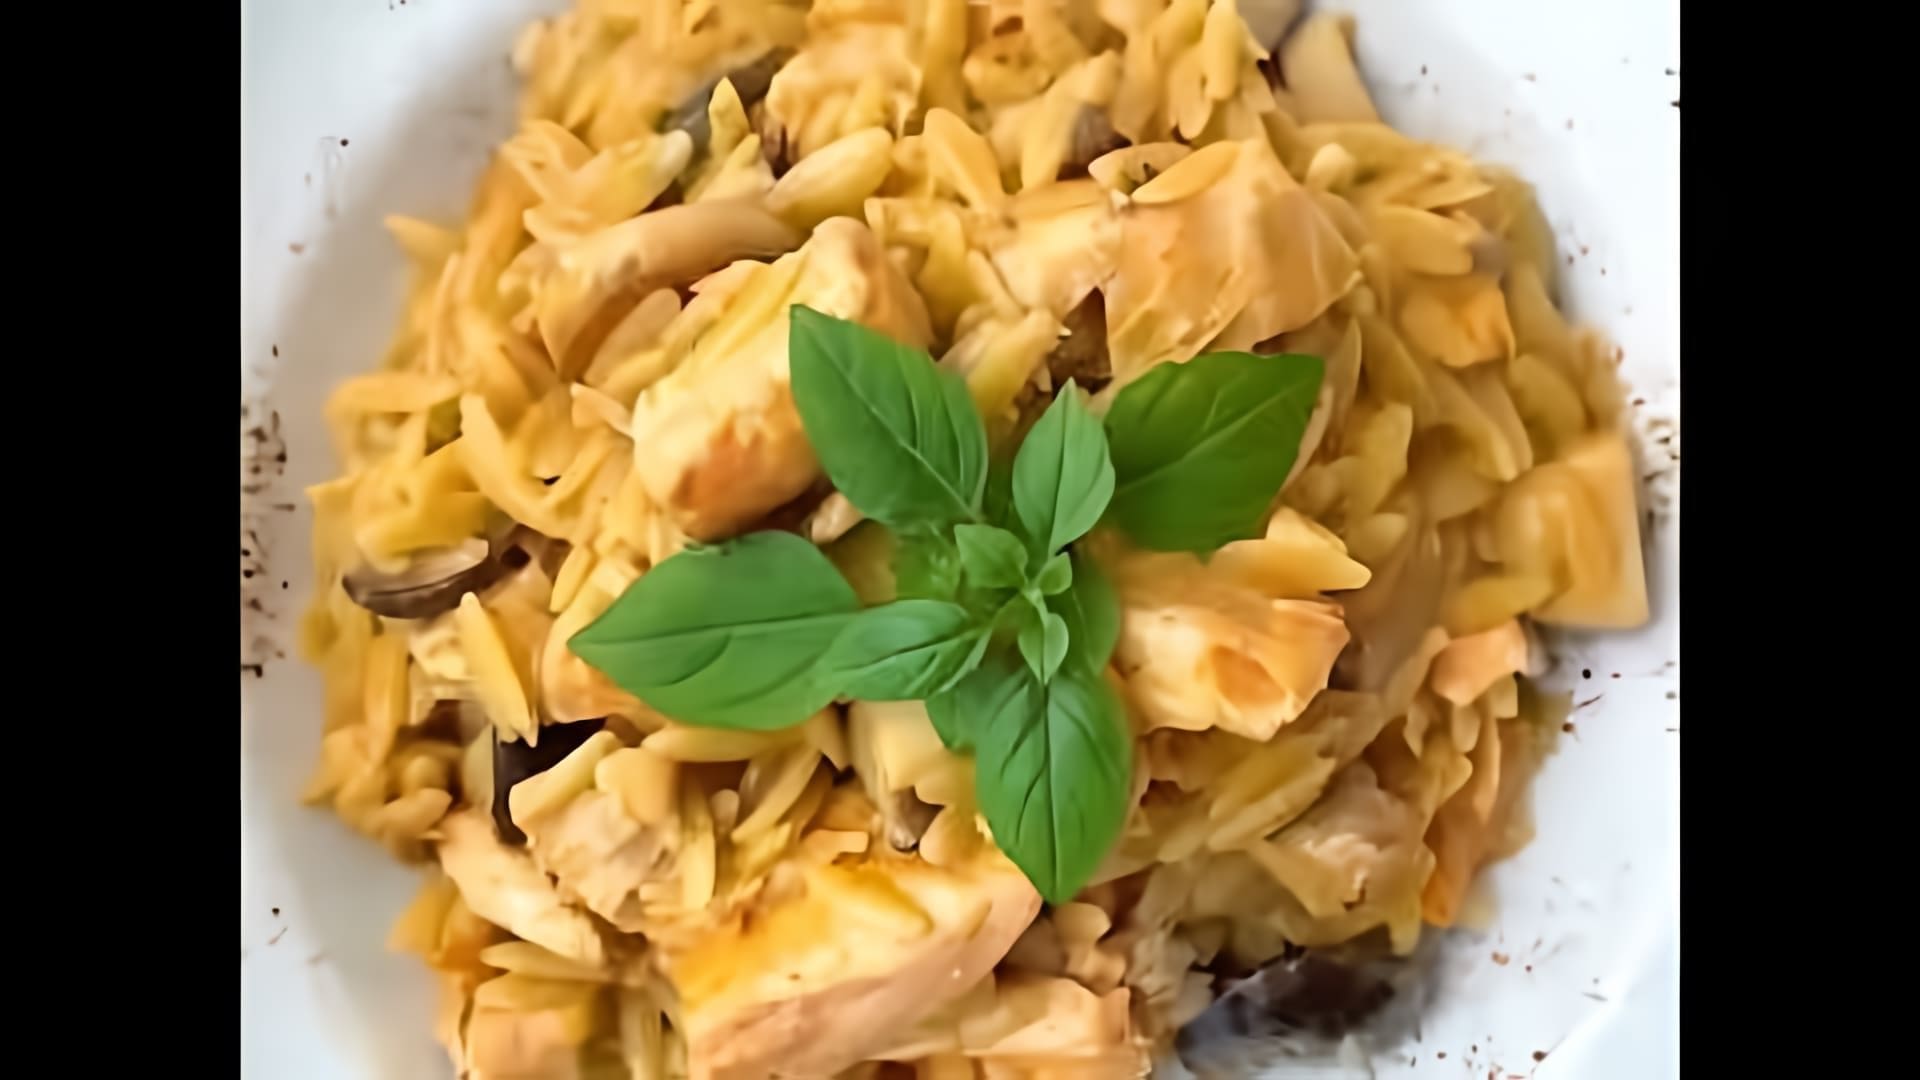 В этом видео демонстрируется рецепт приготовления пасты в соусе Том-ям без лактозы